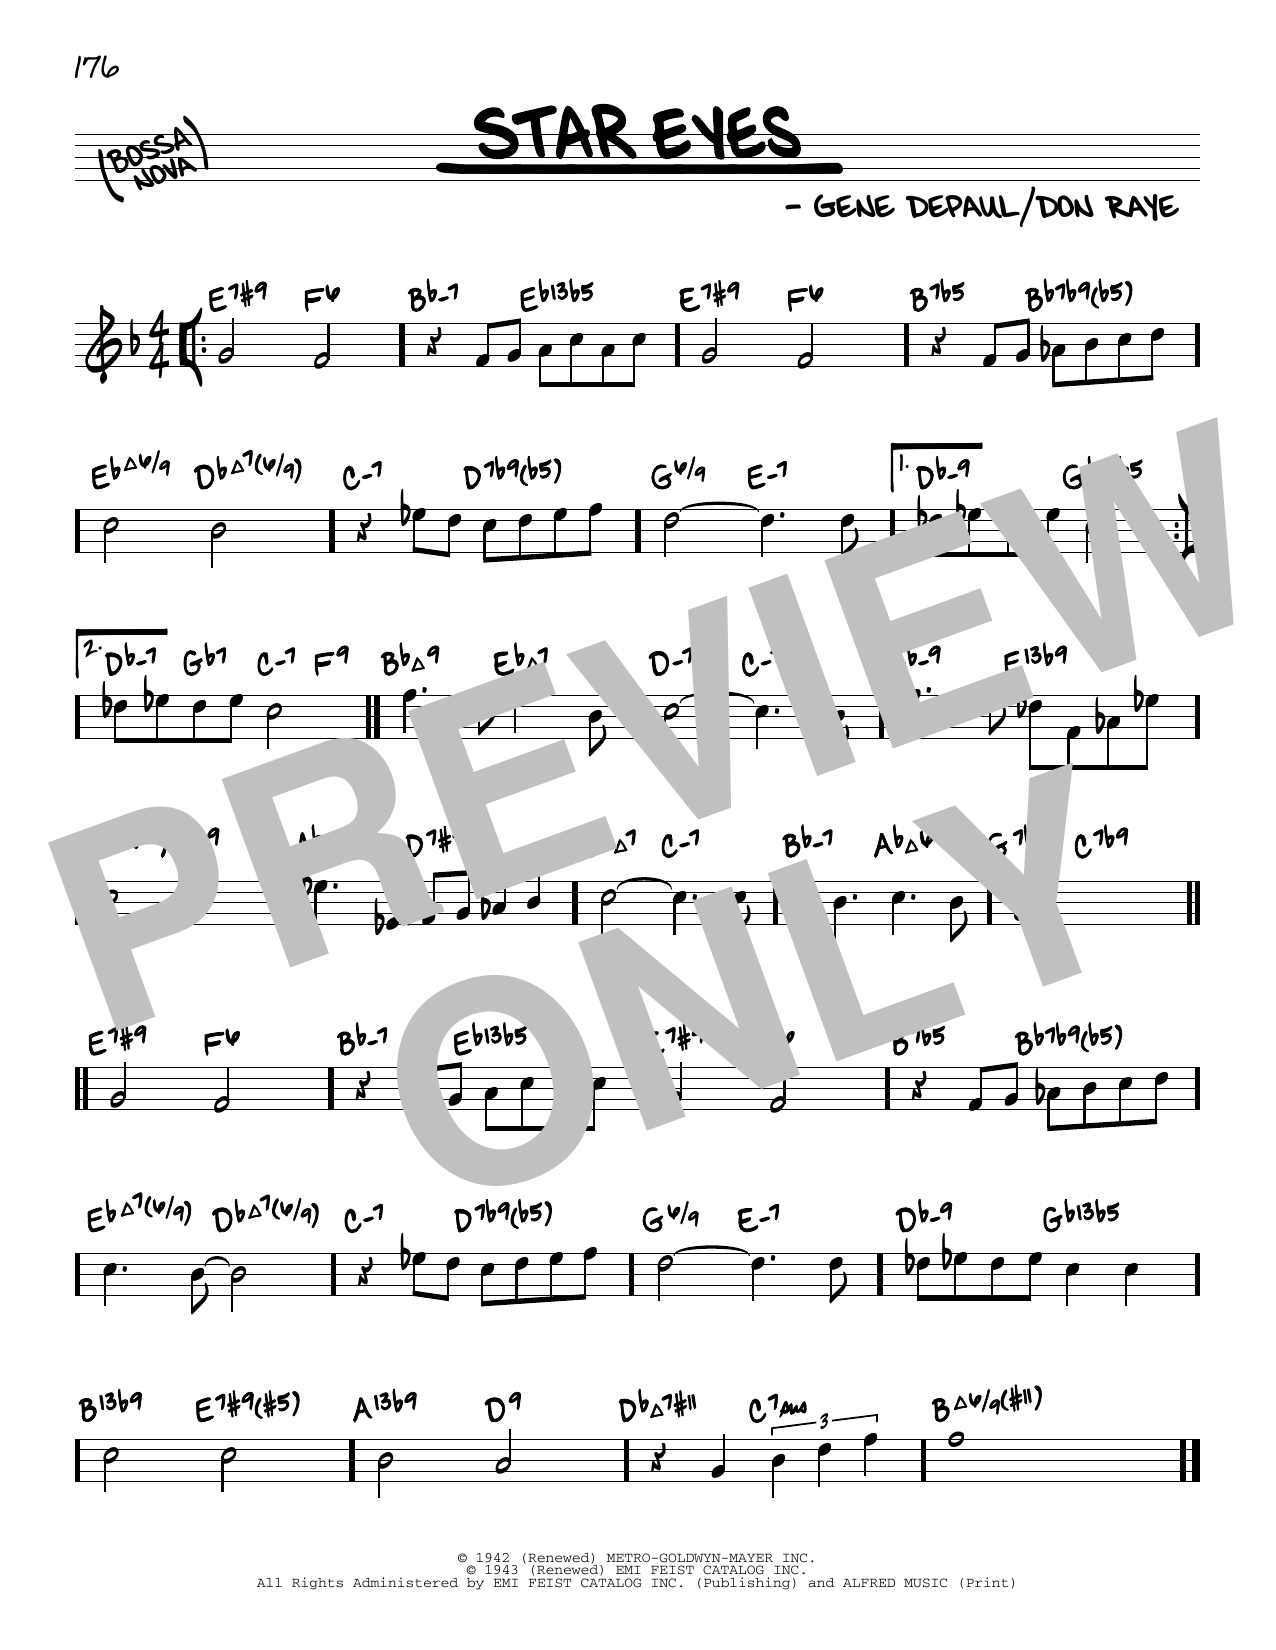 Charlie Parker Star Eyes (arr. David Hazeltine) Sheet Music Notes & Chords for Real Book – Enhanced Chords - Download or Print PDF